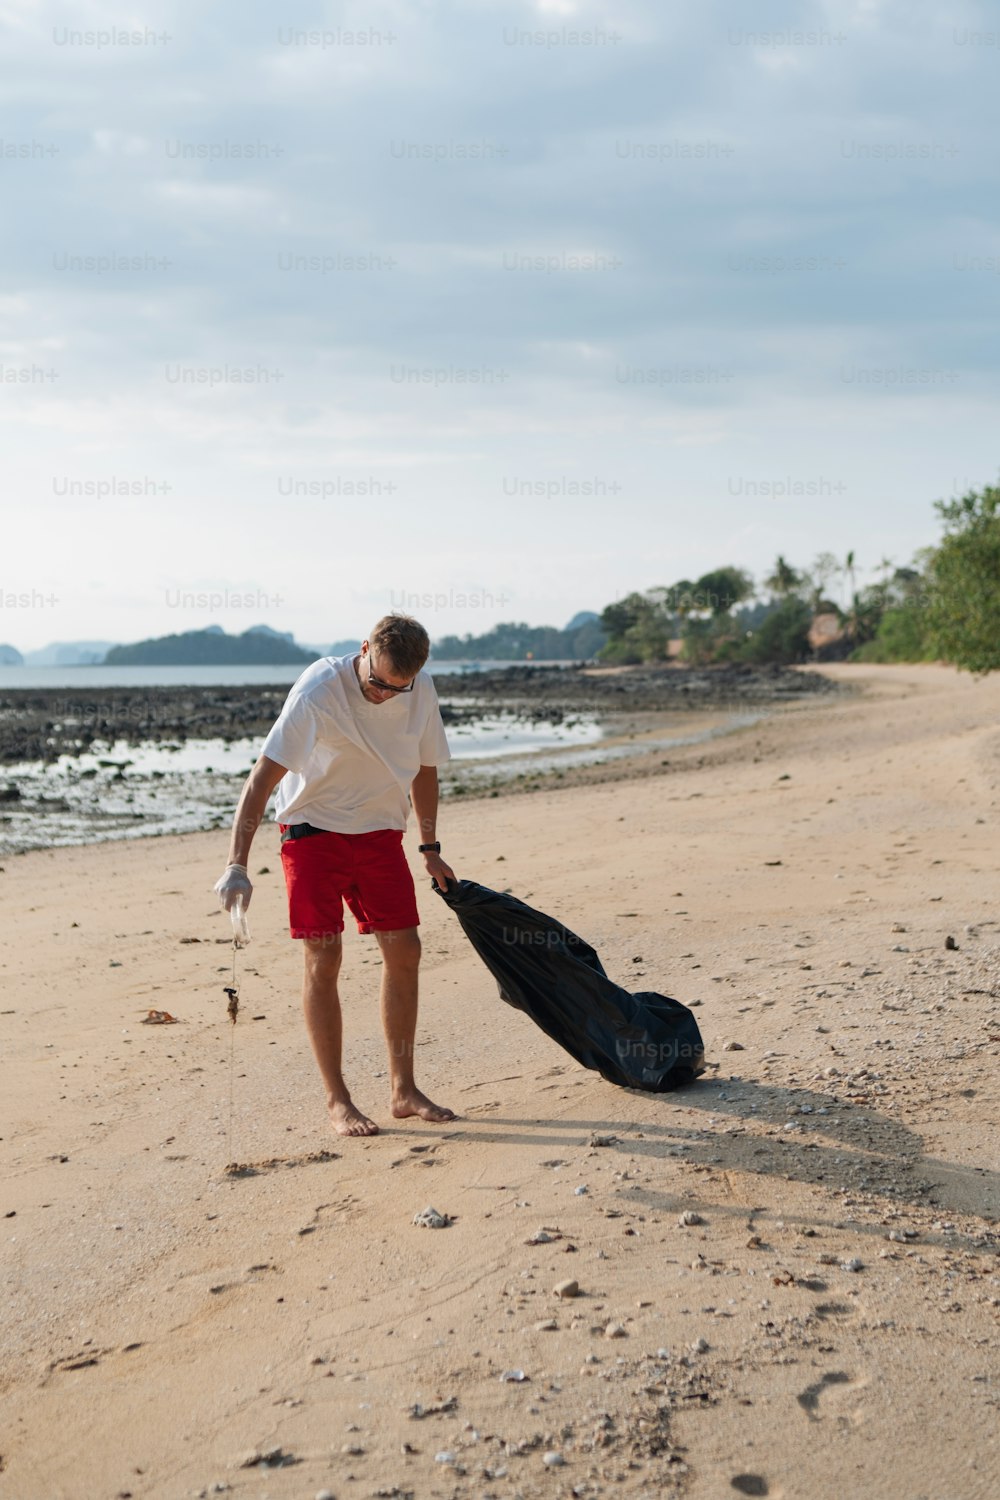 Un homme marchant sur une plage avec un sac de bagages